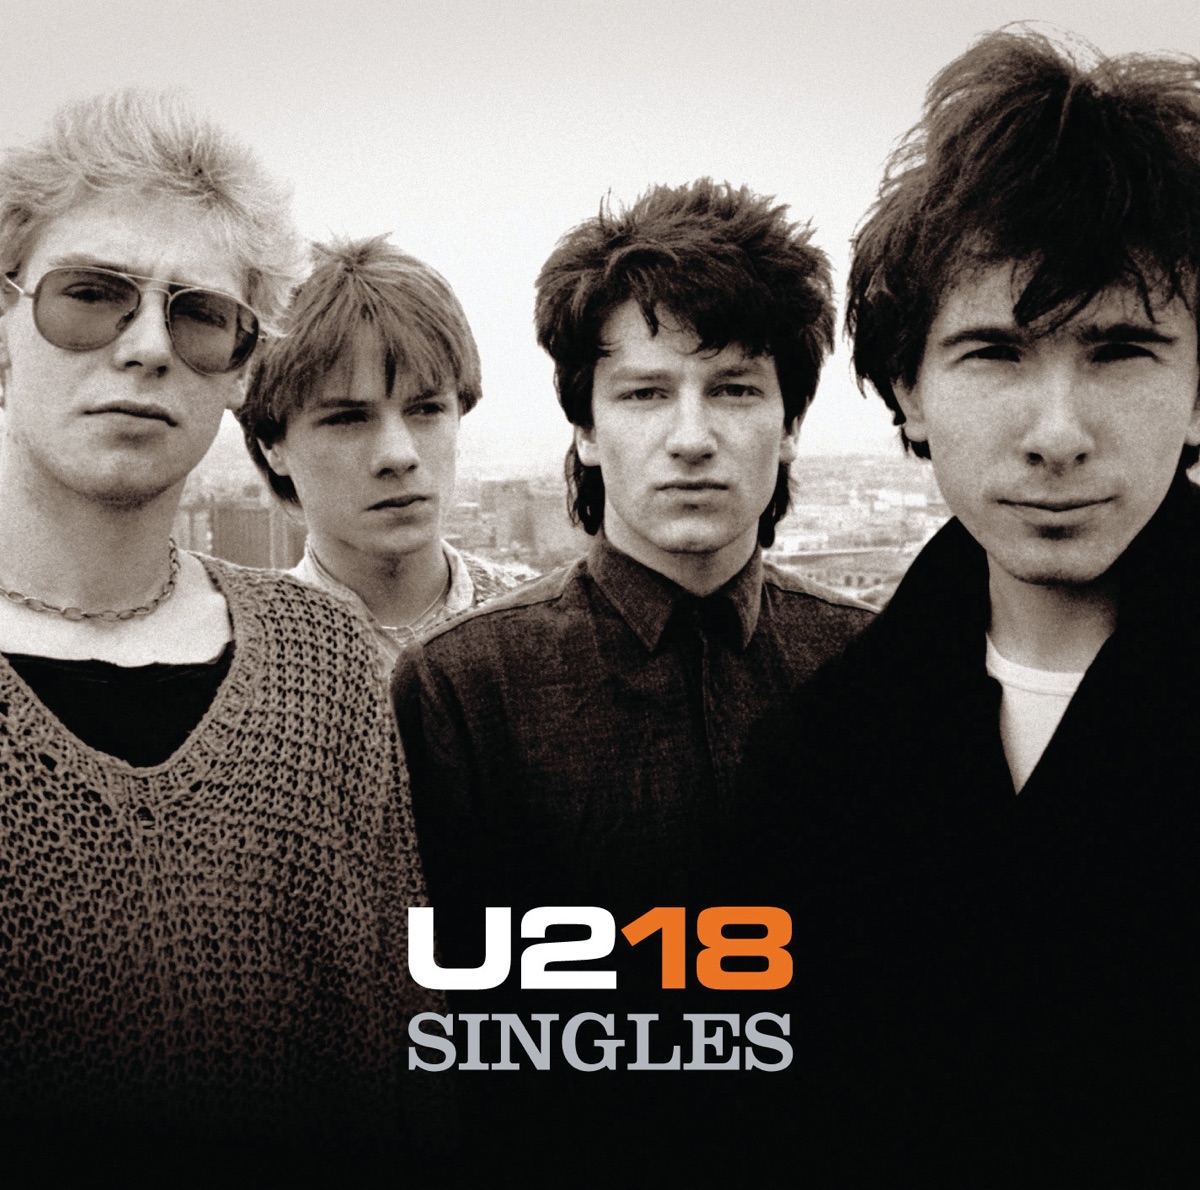 Songs of Surrender - Album by U2 - Apple Music